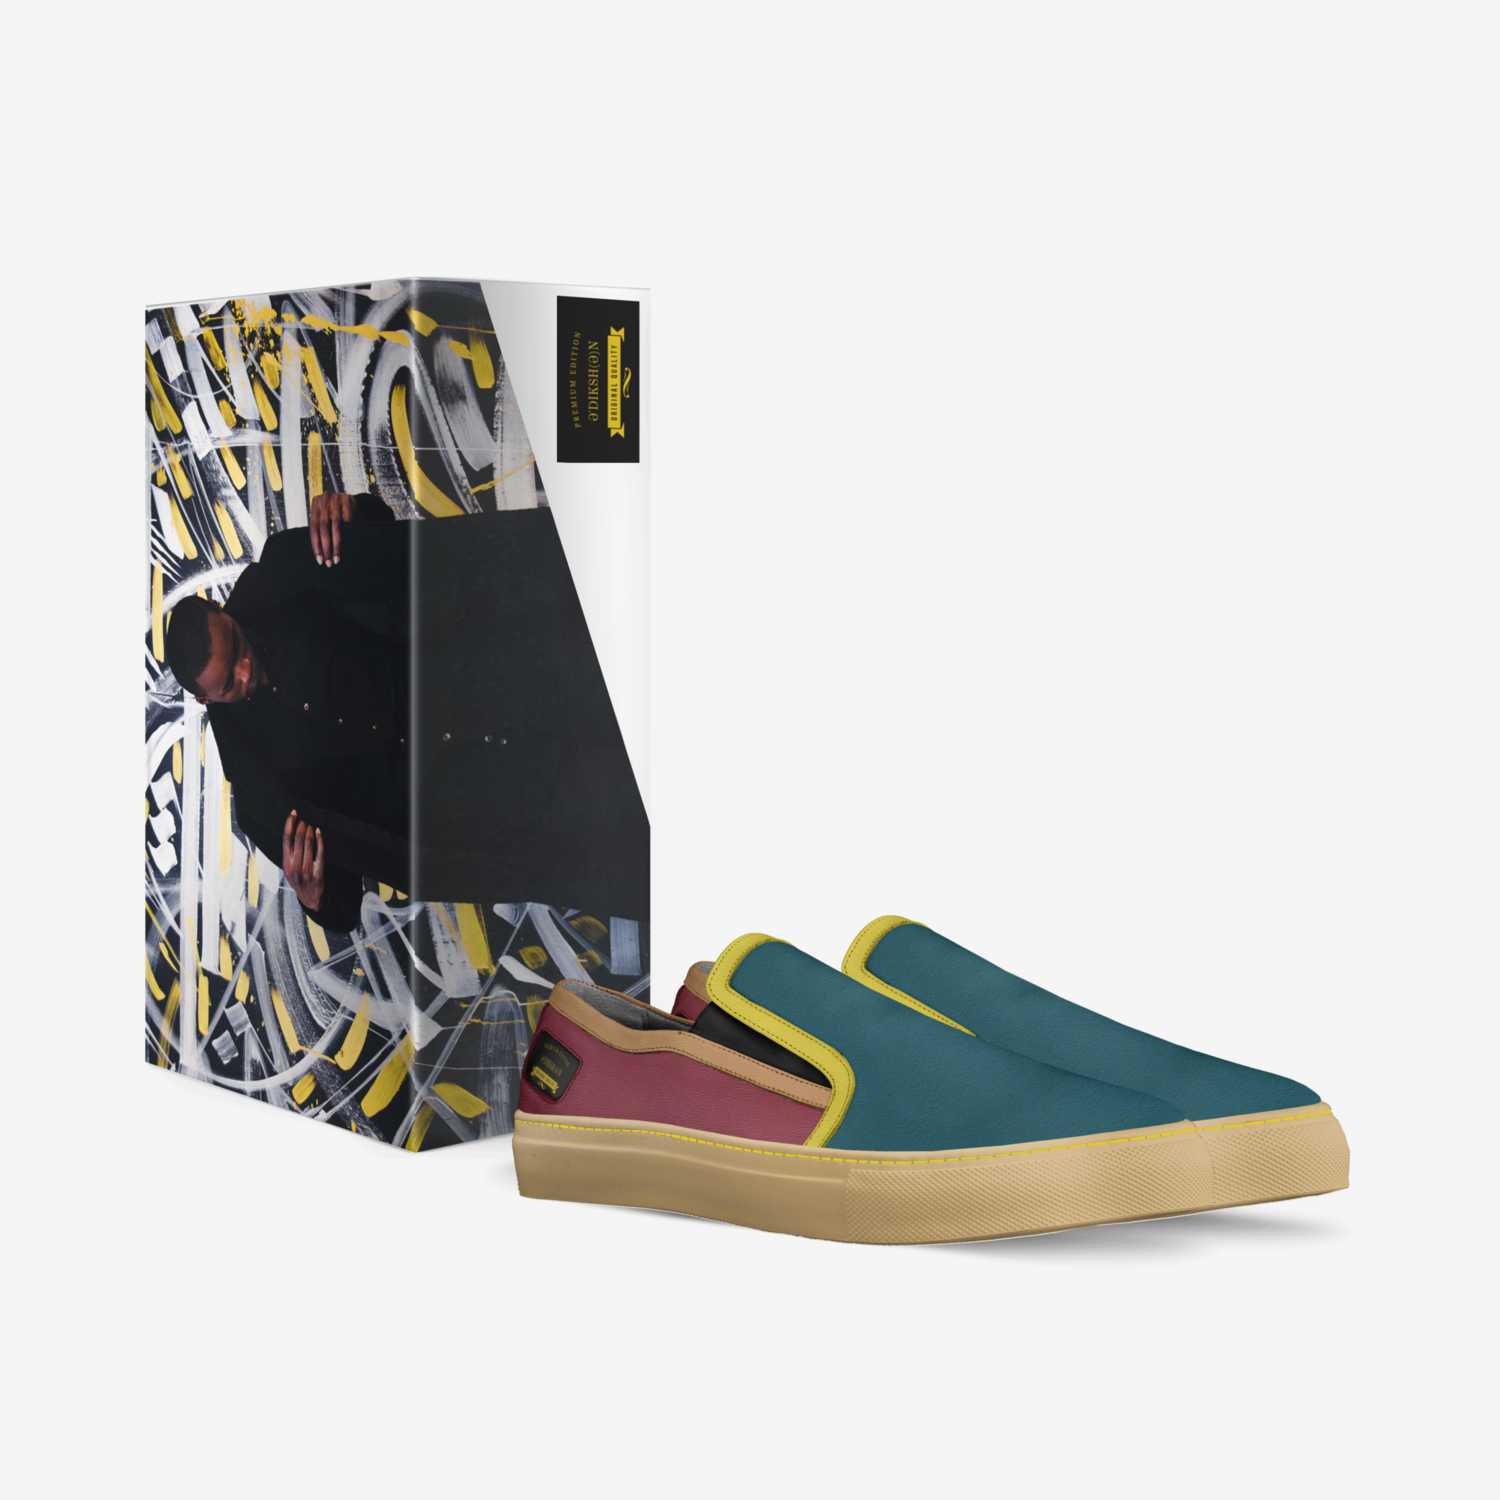 əˈDikSH(ə)n custom made in Italy shoes by Sharon Shearz | Box view